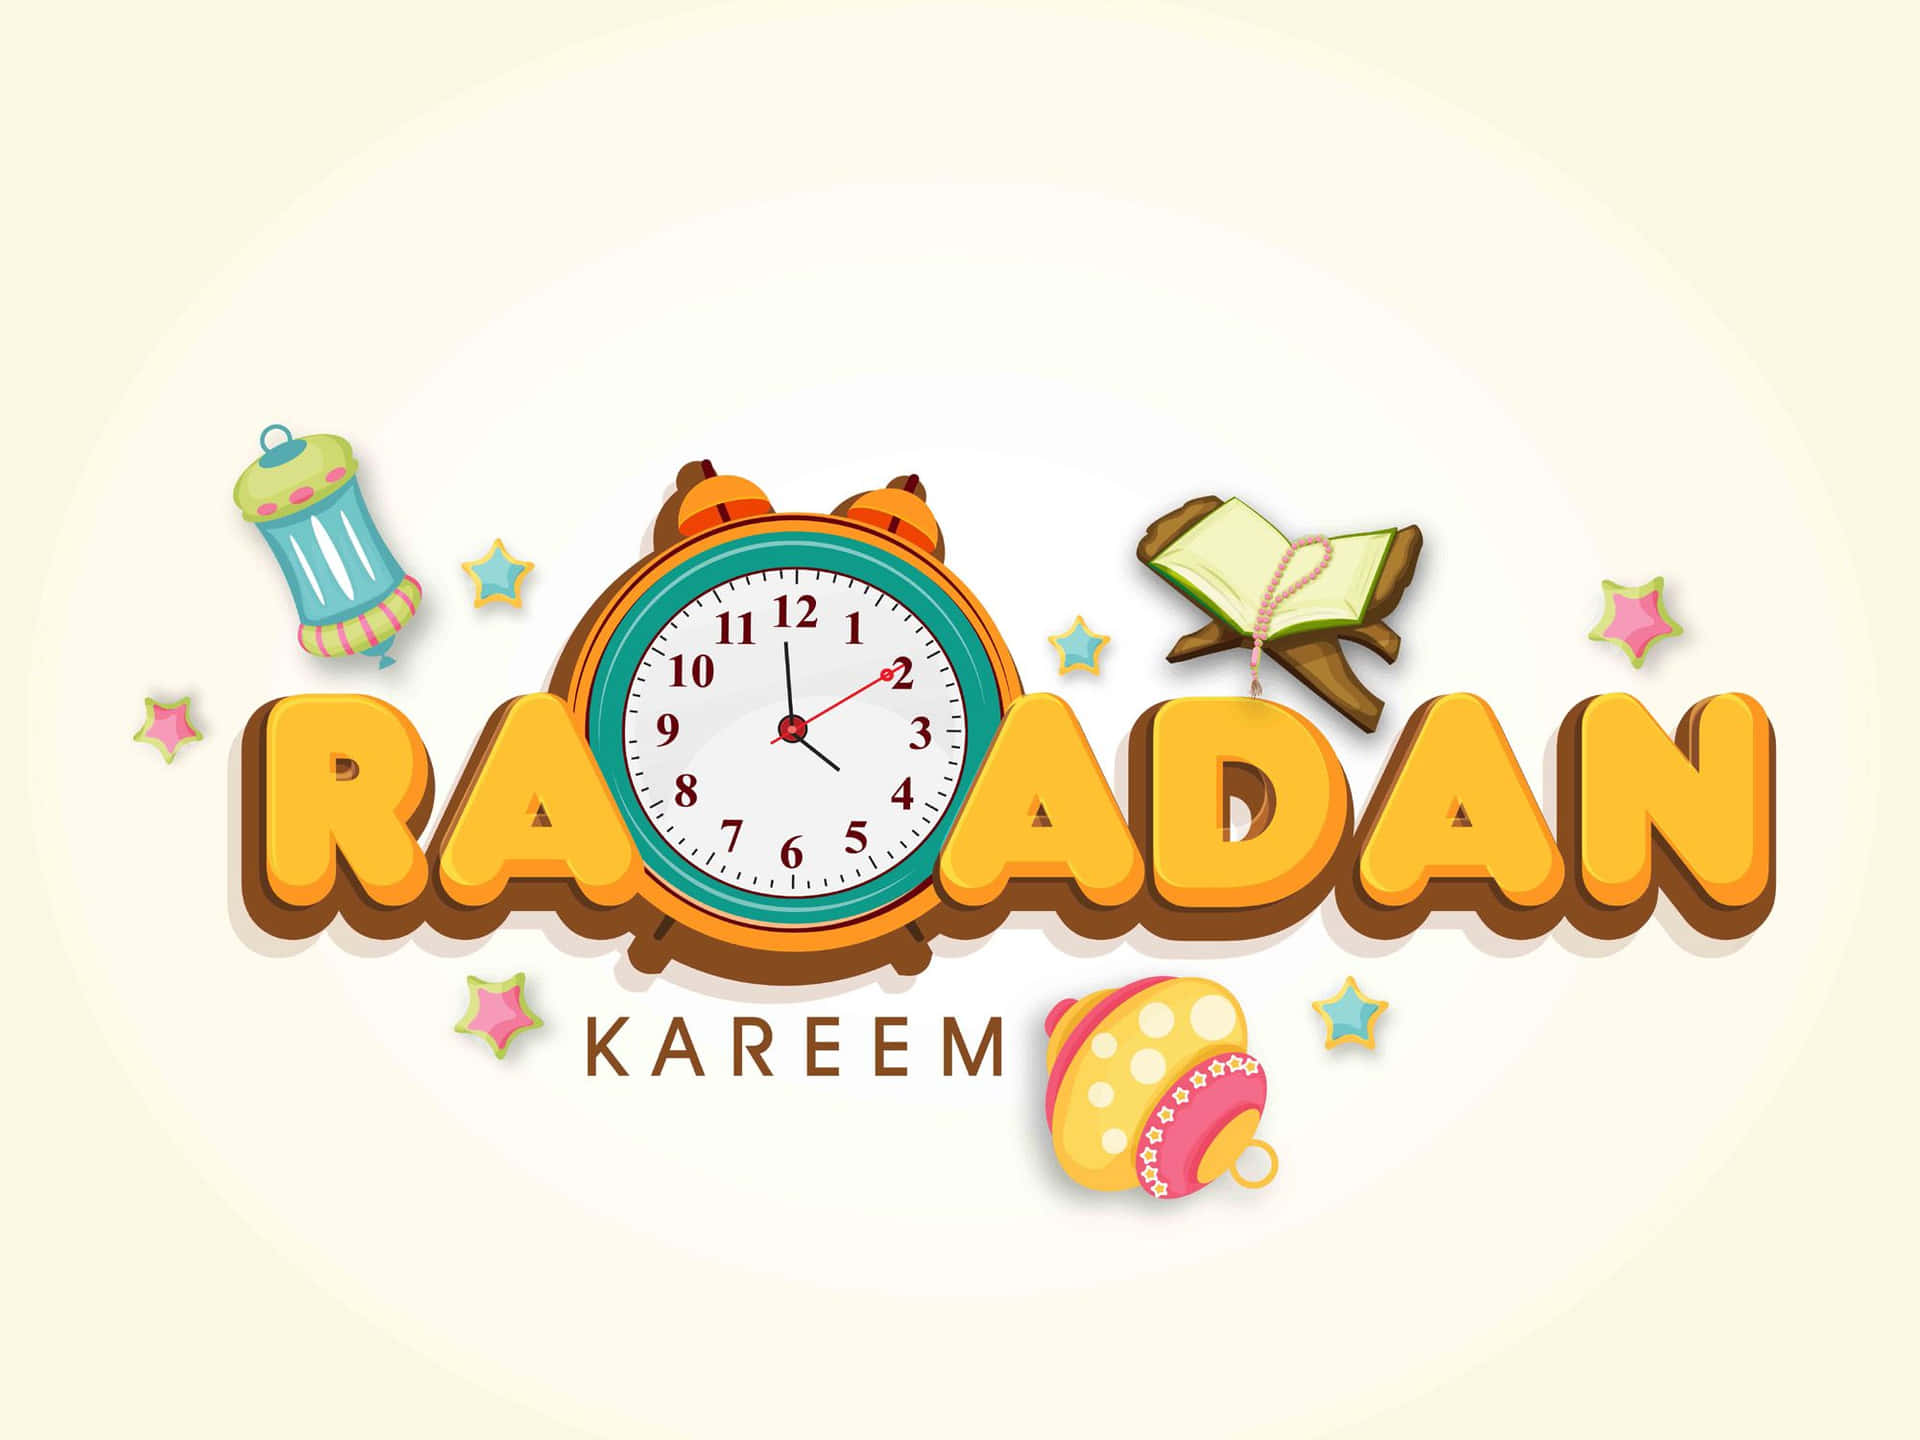 Fundode Ramadan Mubarak